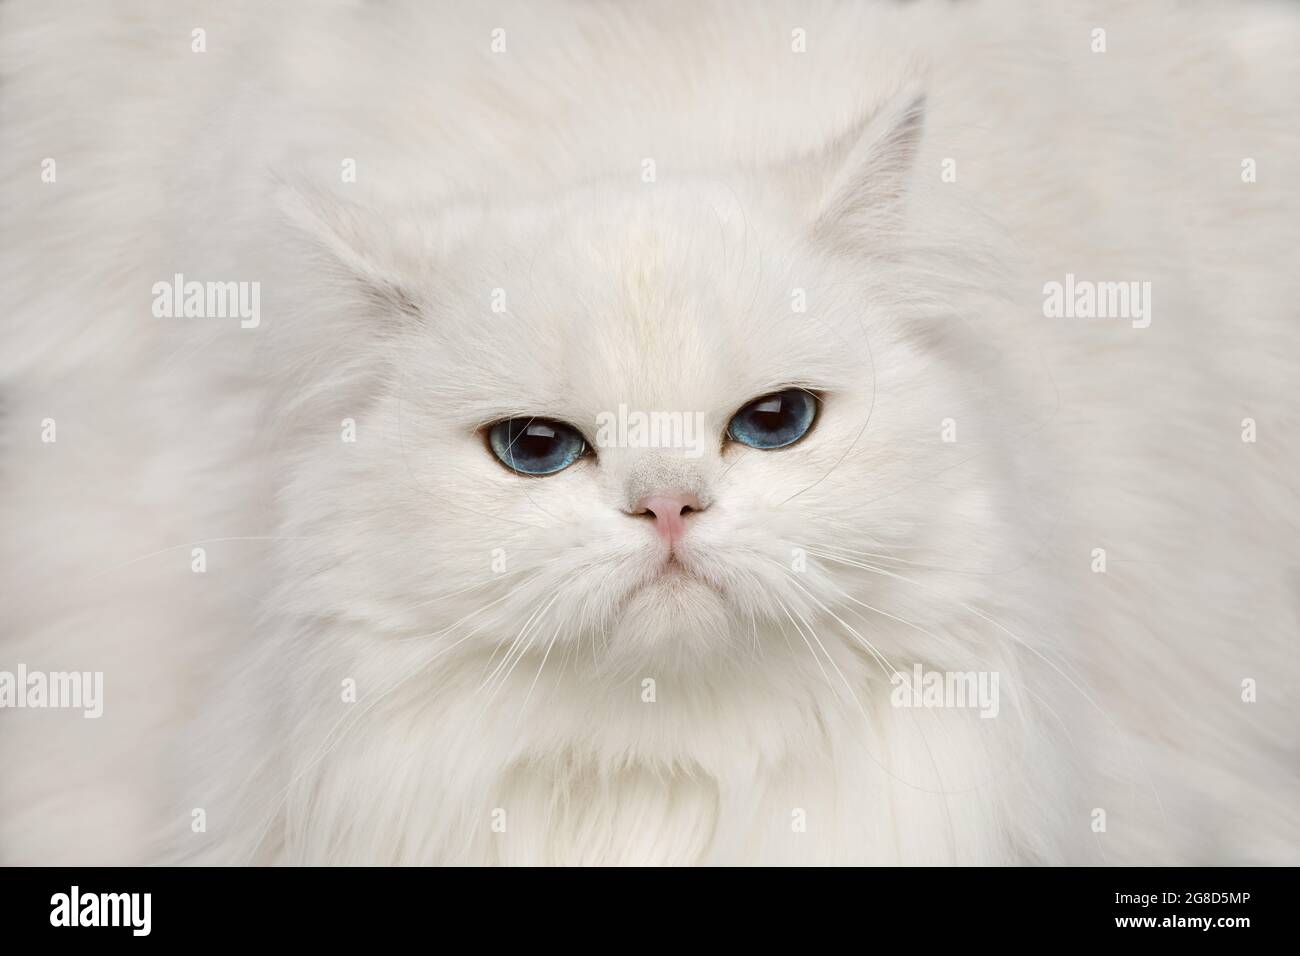 Primer plano Retrato de gato británico infeliz, color blanco puro con ojos azules, mirando en la cámara sobre fondo negro aislado, vista frontal Foto de stock